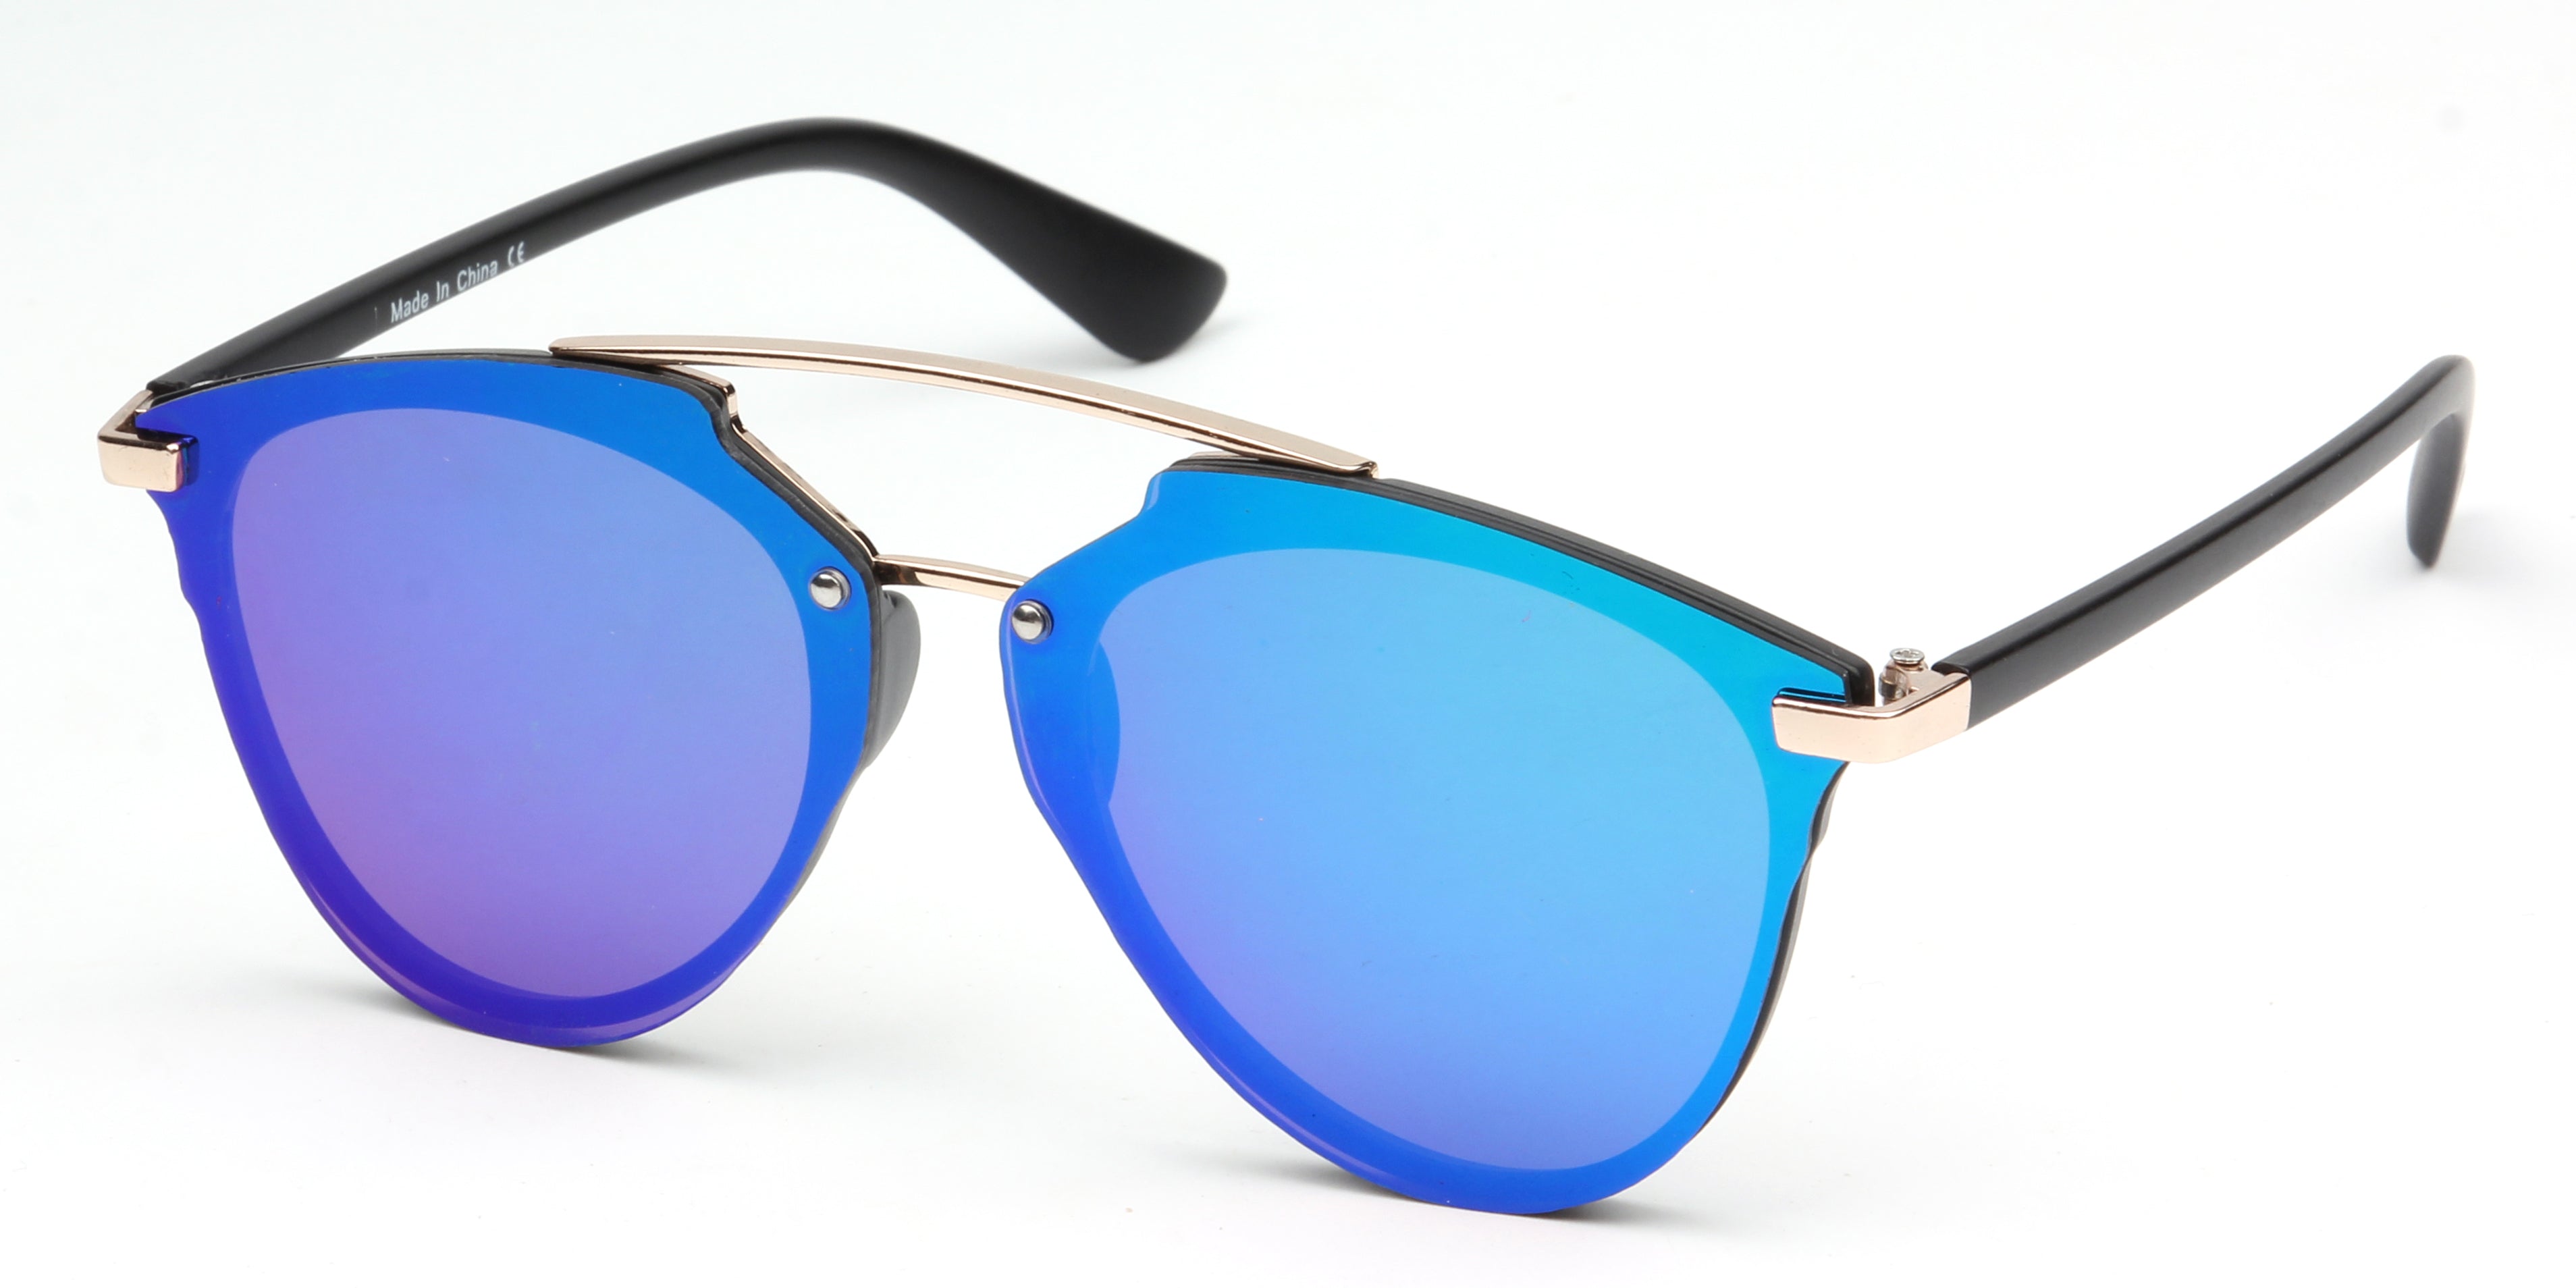 S1010 - Unisex Mirrored Round Sunglasses PurpleGreen